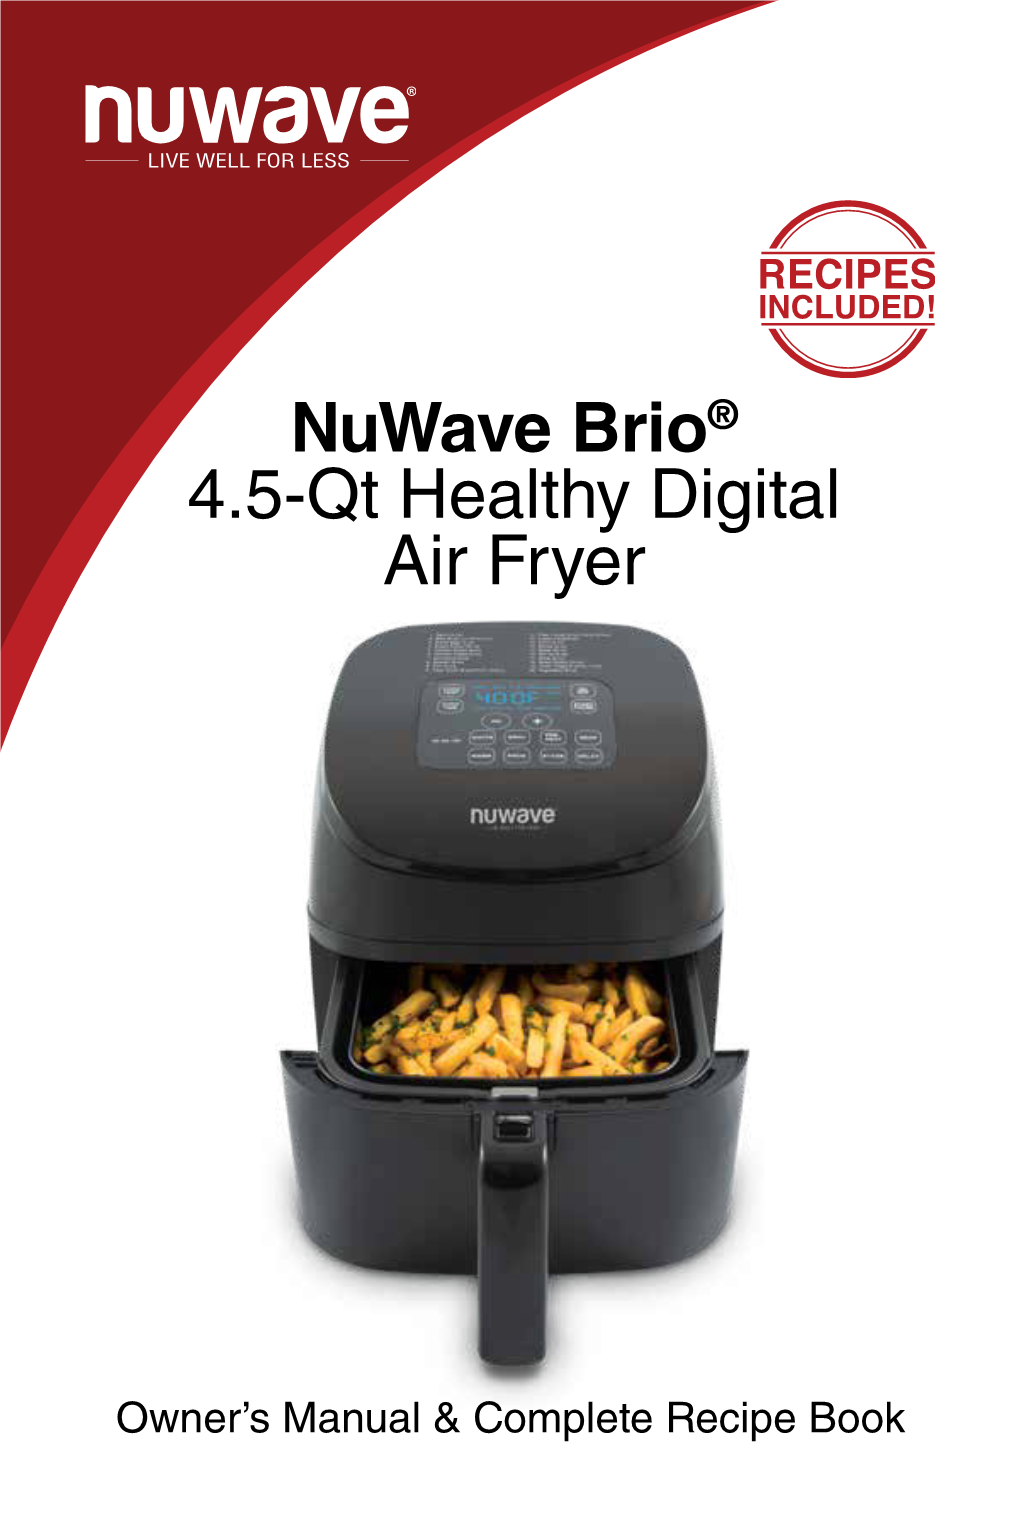 Nuwave Brio® 4.5-Qt Healthy Digital Air Fryer